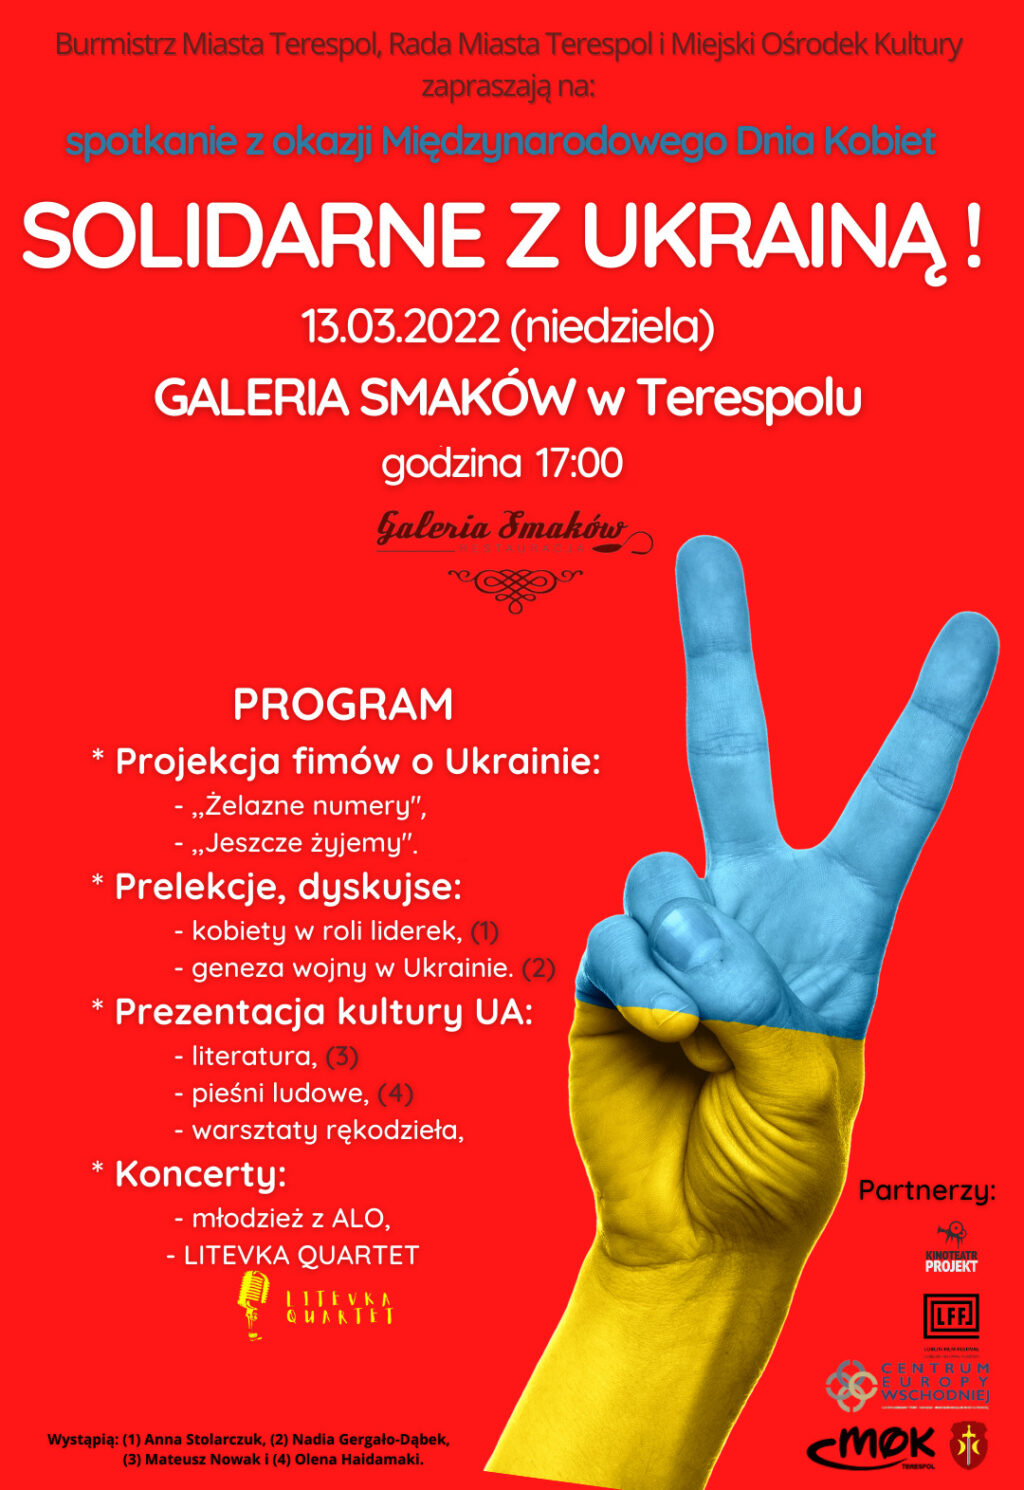 Solidarnie z Ukrainą również w Dzień Kobiet